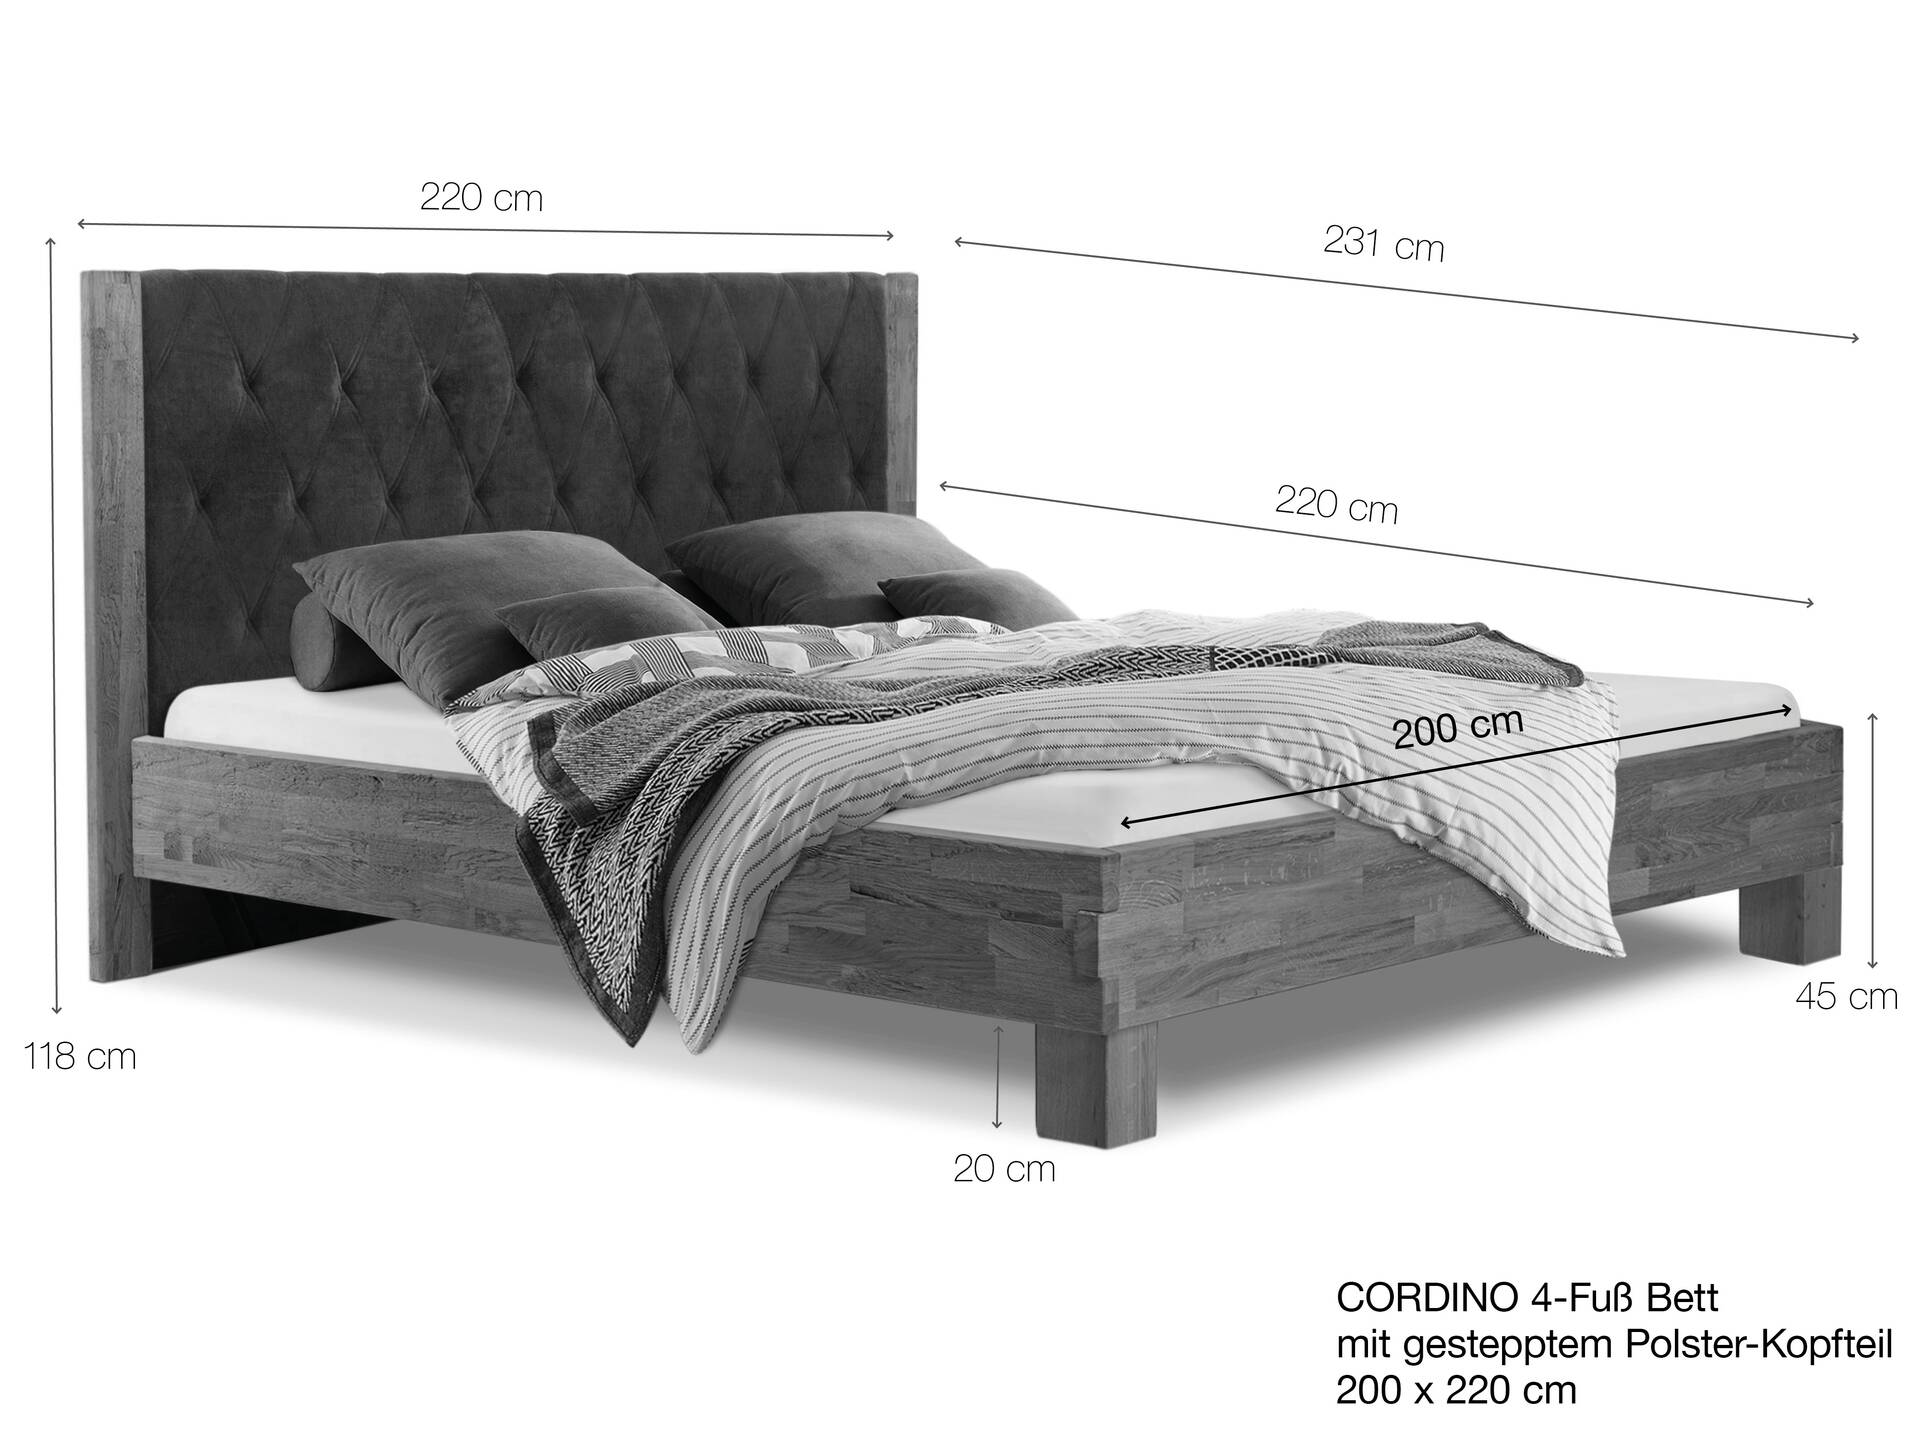 CORDINO 4-Fuß-Bett aus Eiche mit gestepptem Polster-Kopfteil, Material Massivholz 200 x 220 cm | Eiche lackiert | Stoff Anthrazit | gebürstet